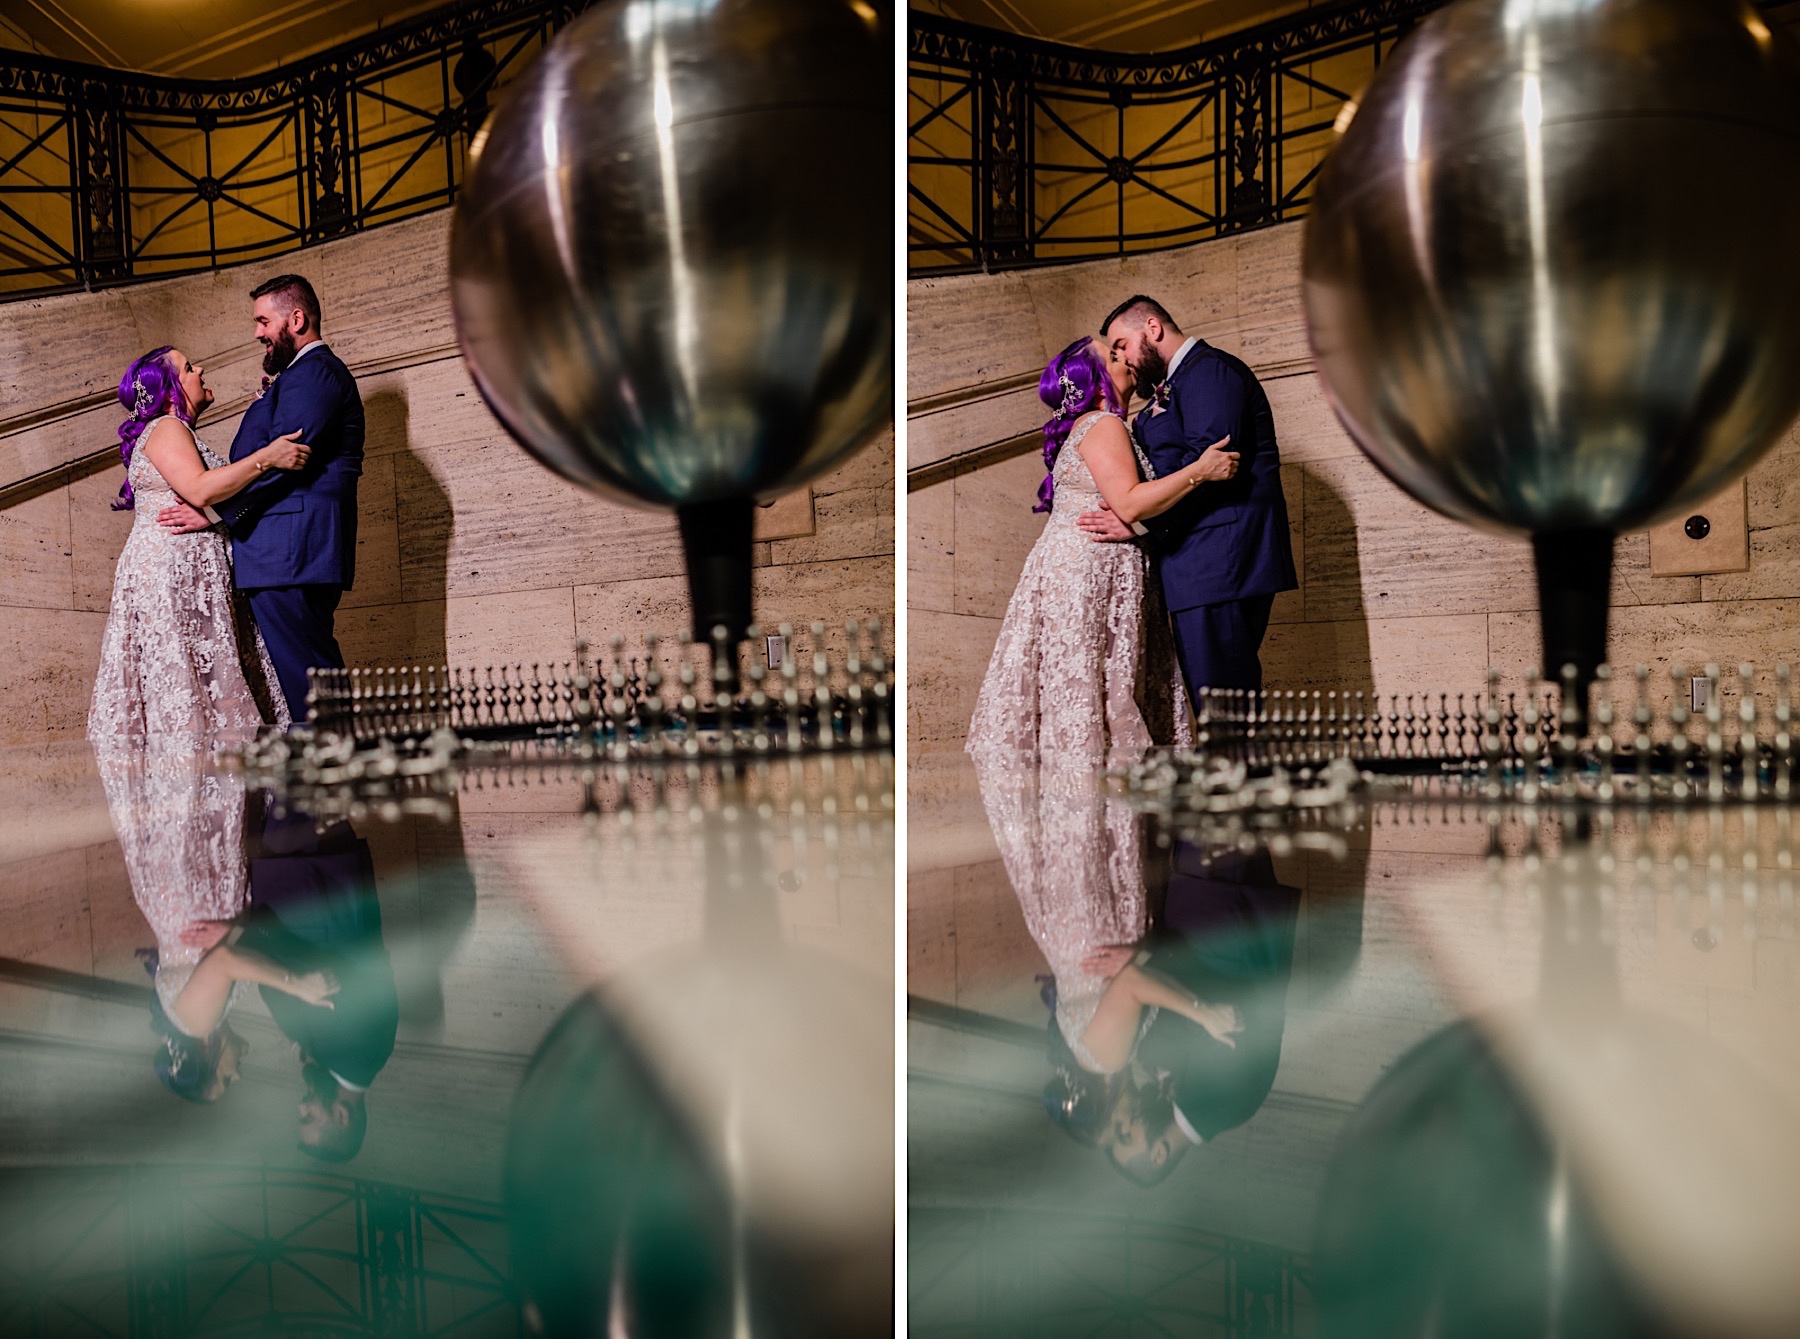 pendulum wedding photos at Franklin institute